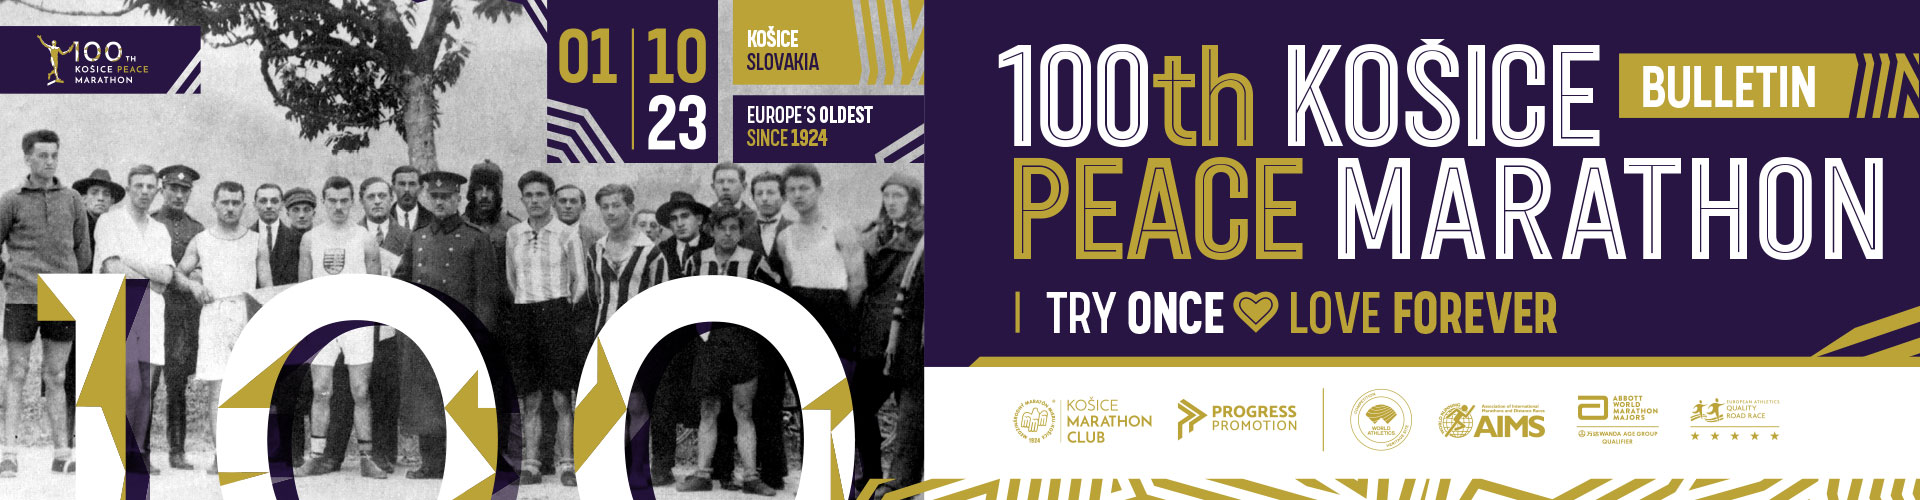 100th Kosice Peace Marathon - Bulletin